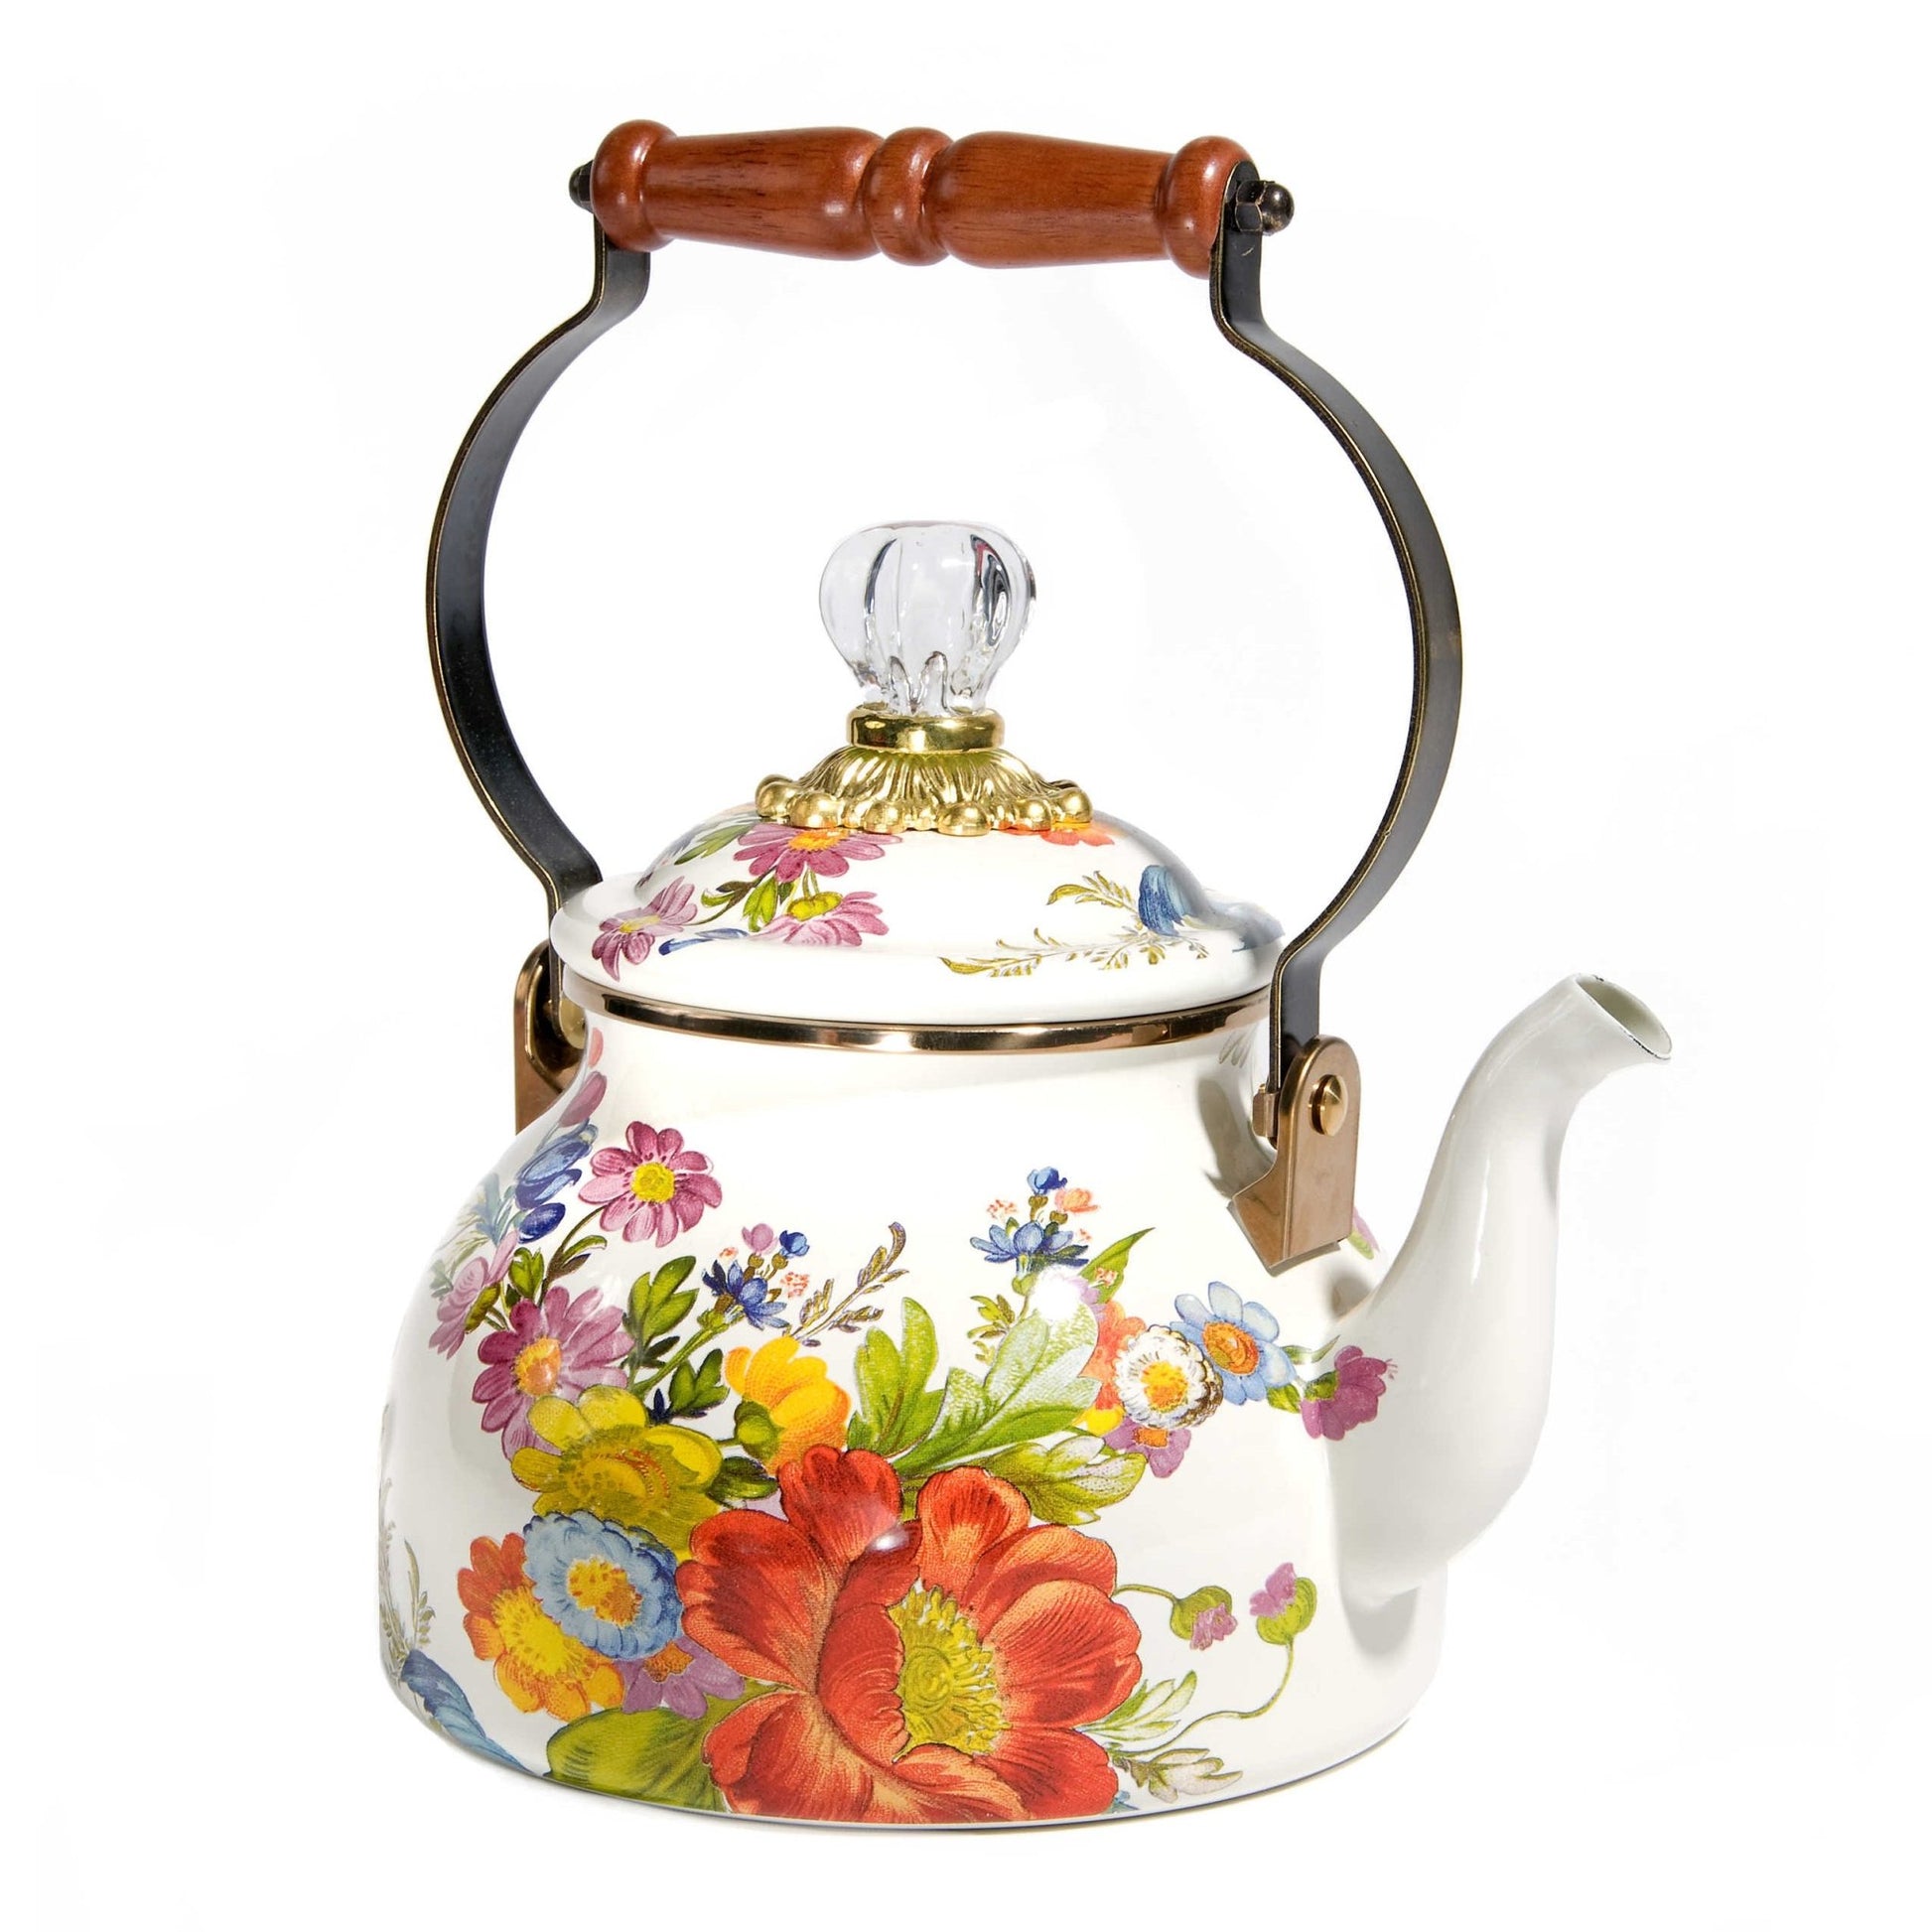 https://vesimidesign.com/cdn/shop/products/flower-market-white-enamel-tea-kettle-by-mackenzie-childs-189l-662220.jpg?v=1686863793&width=1946